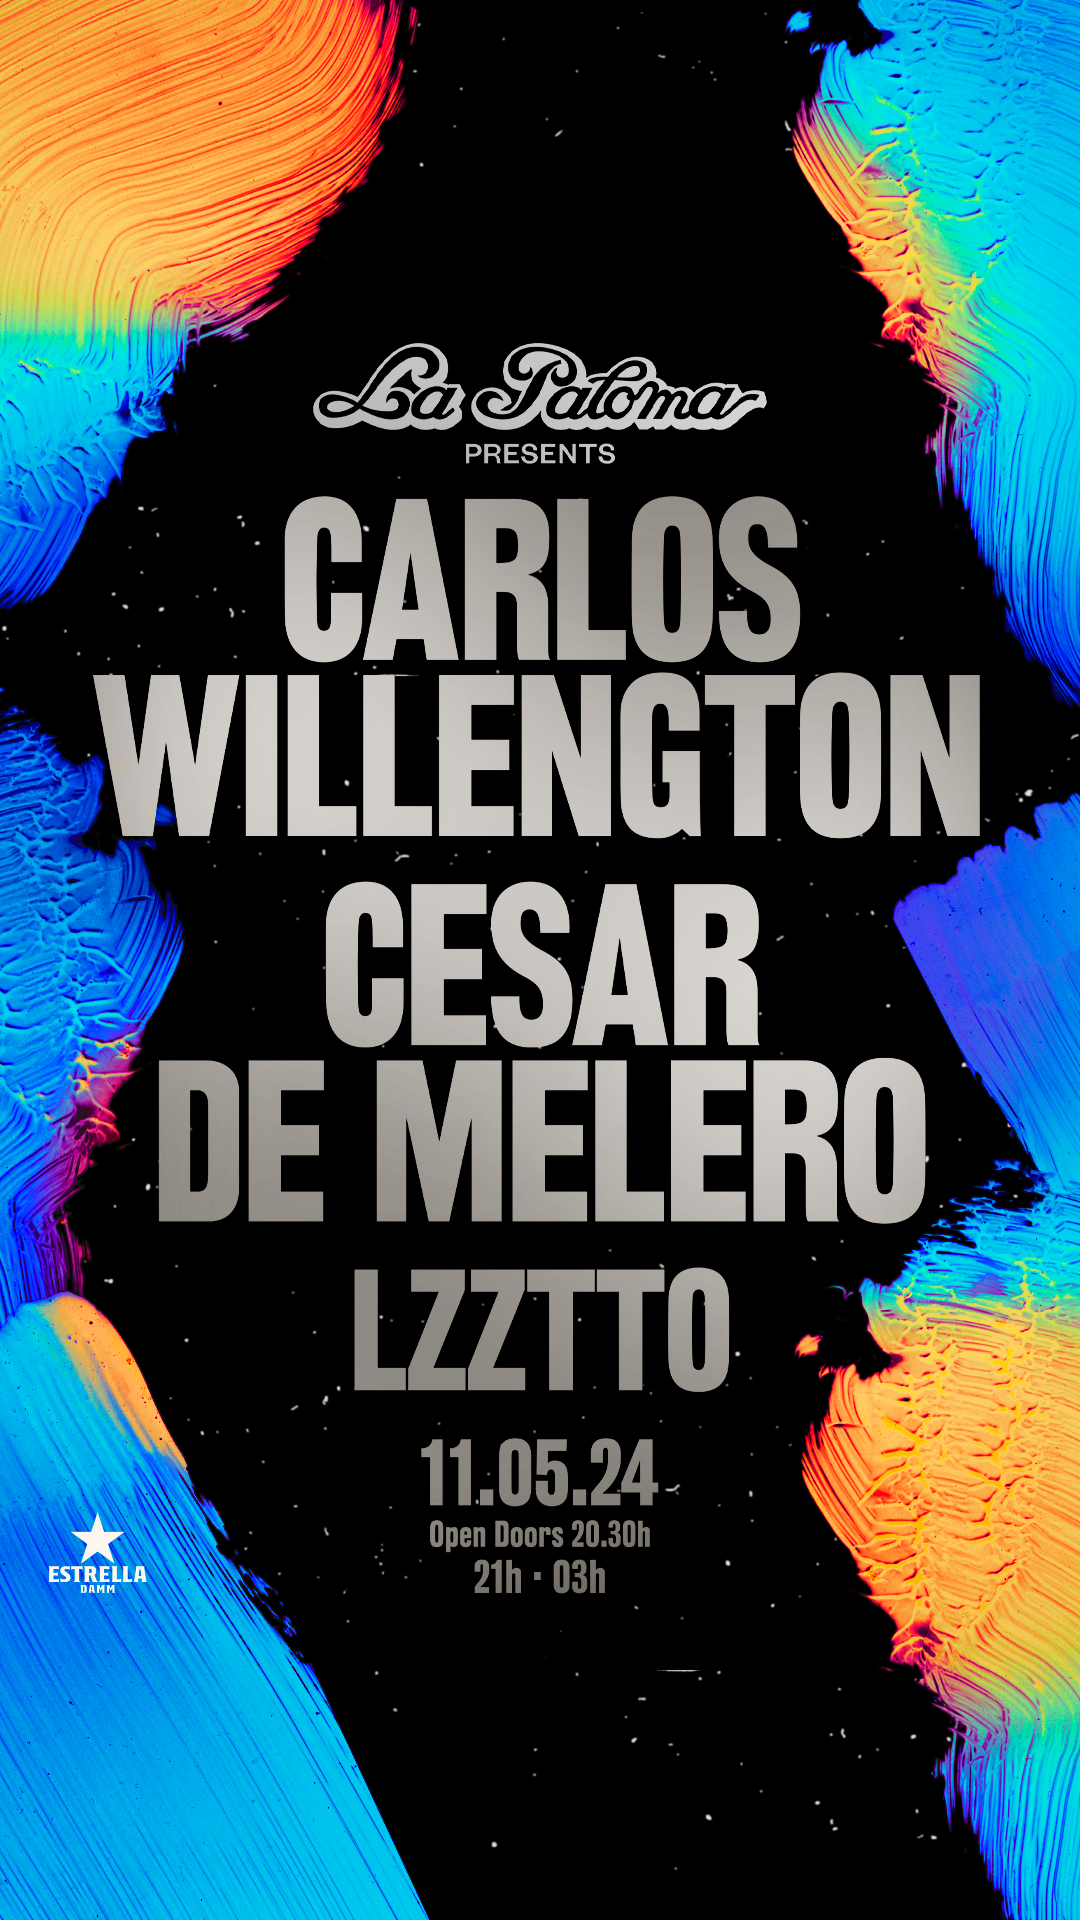 La Paloma presents: Carlos Willengton + Cesar De Melero + Lzztto - Página trasera